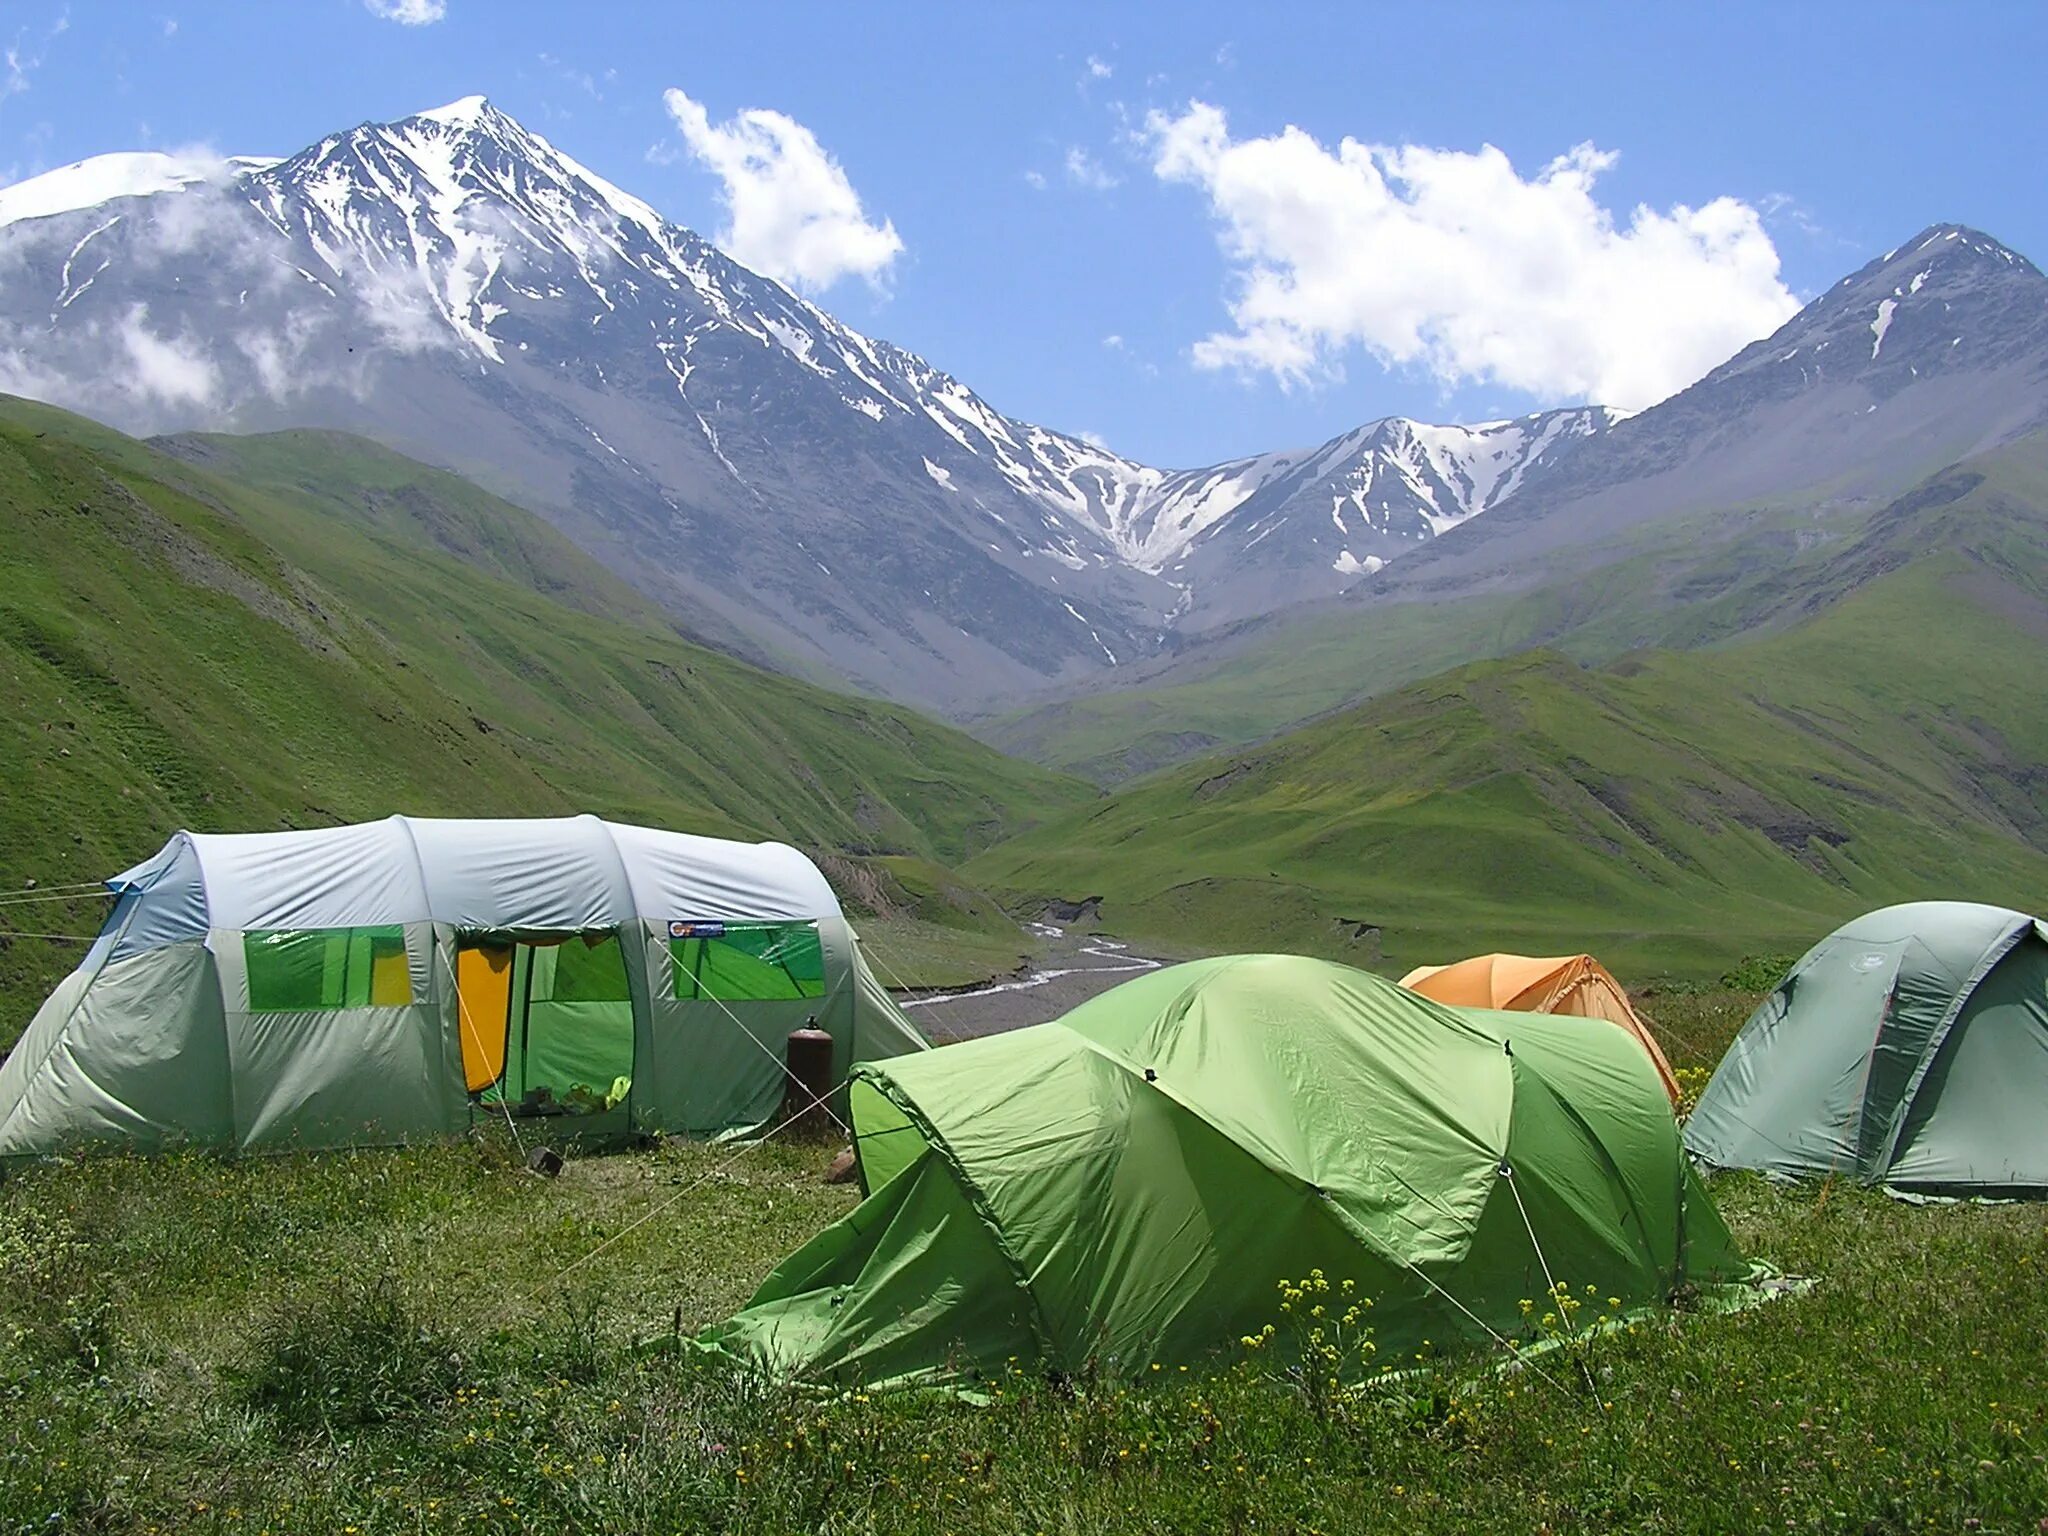 Тур в горы дагестана. Дагестан кемпинг каньон. Дагестан туризм. Кемпинг в Дагестане в горах. Палатка в горах Дагестана.